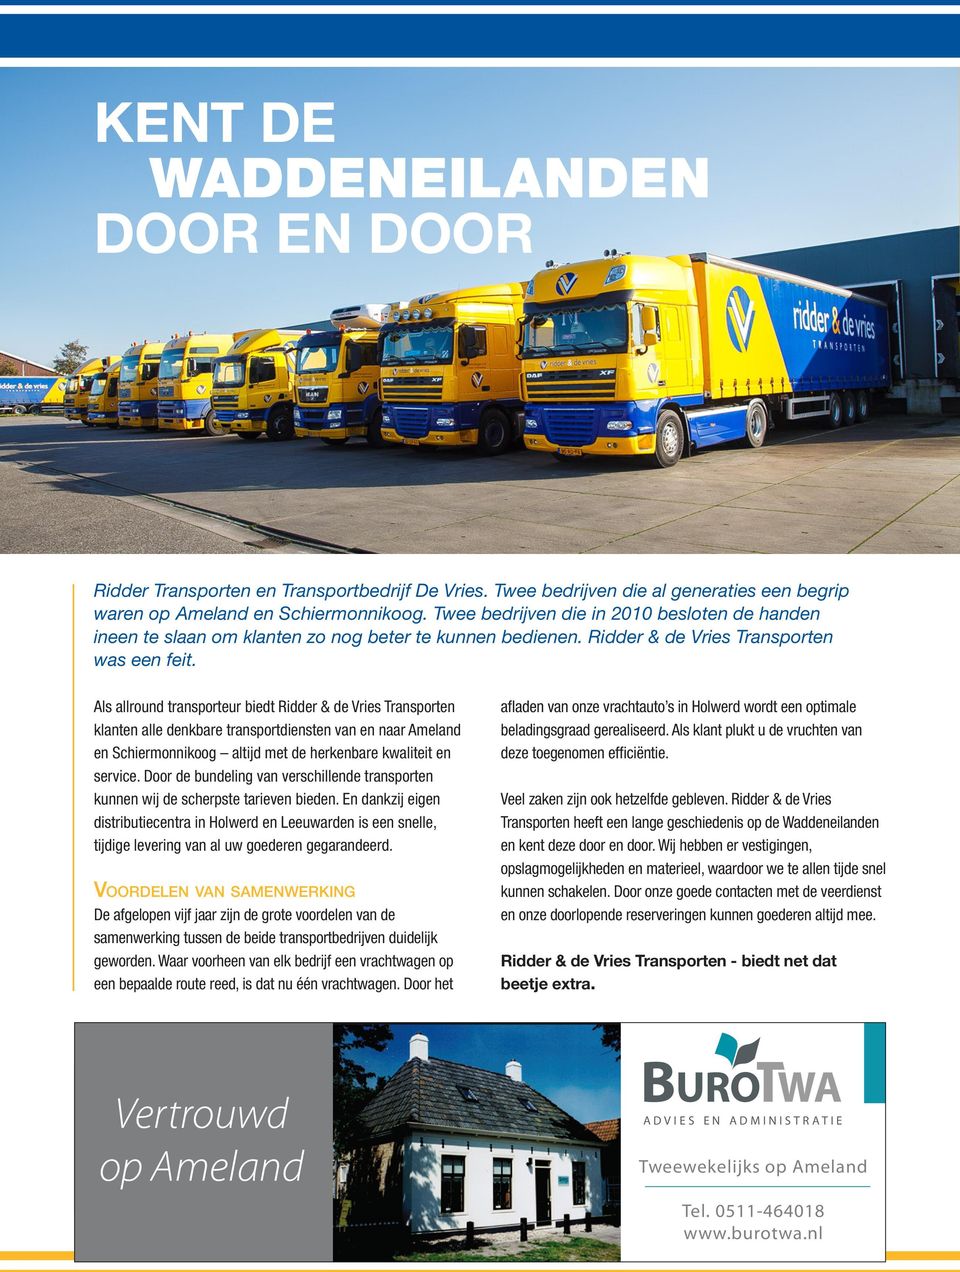 Als allround transporteur biedt Ridder & de Vries Transporten klanten alle denkbare transportdiensten van en naar Ameland en Schiermonnikoog altijd met de herkenbare kwaliteit en service.